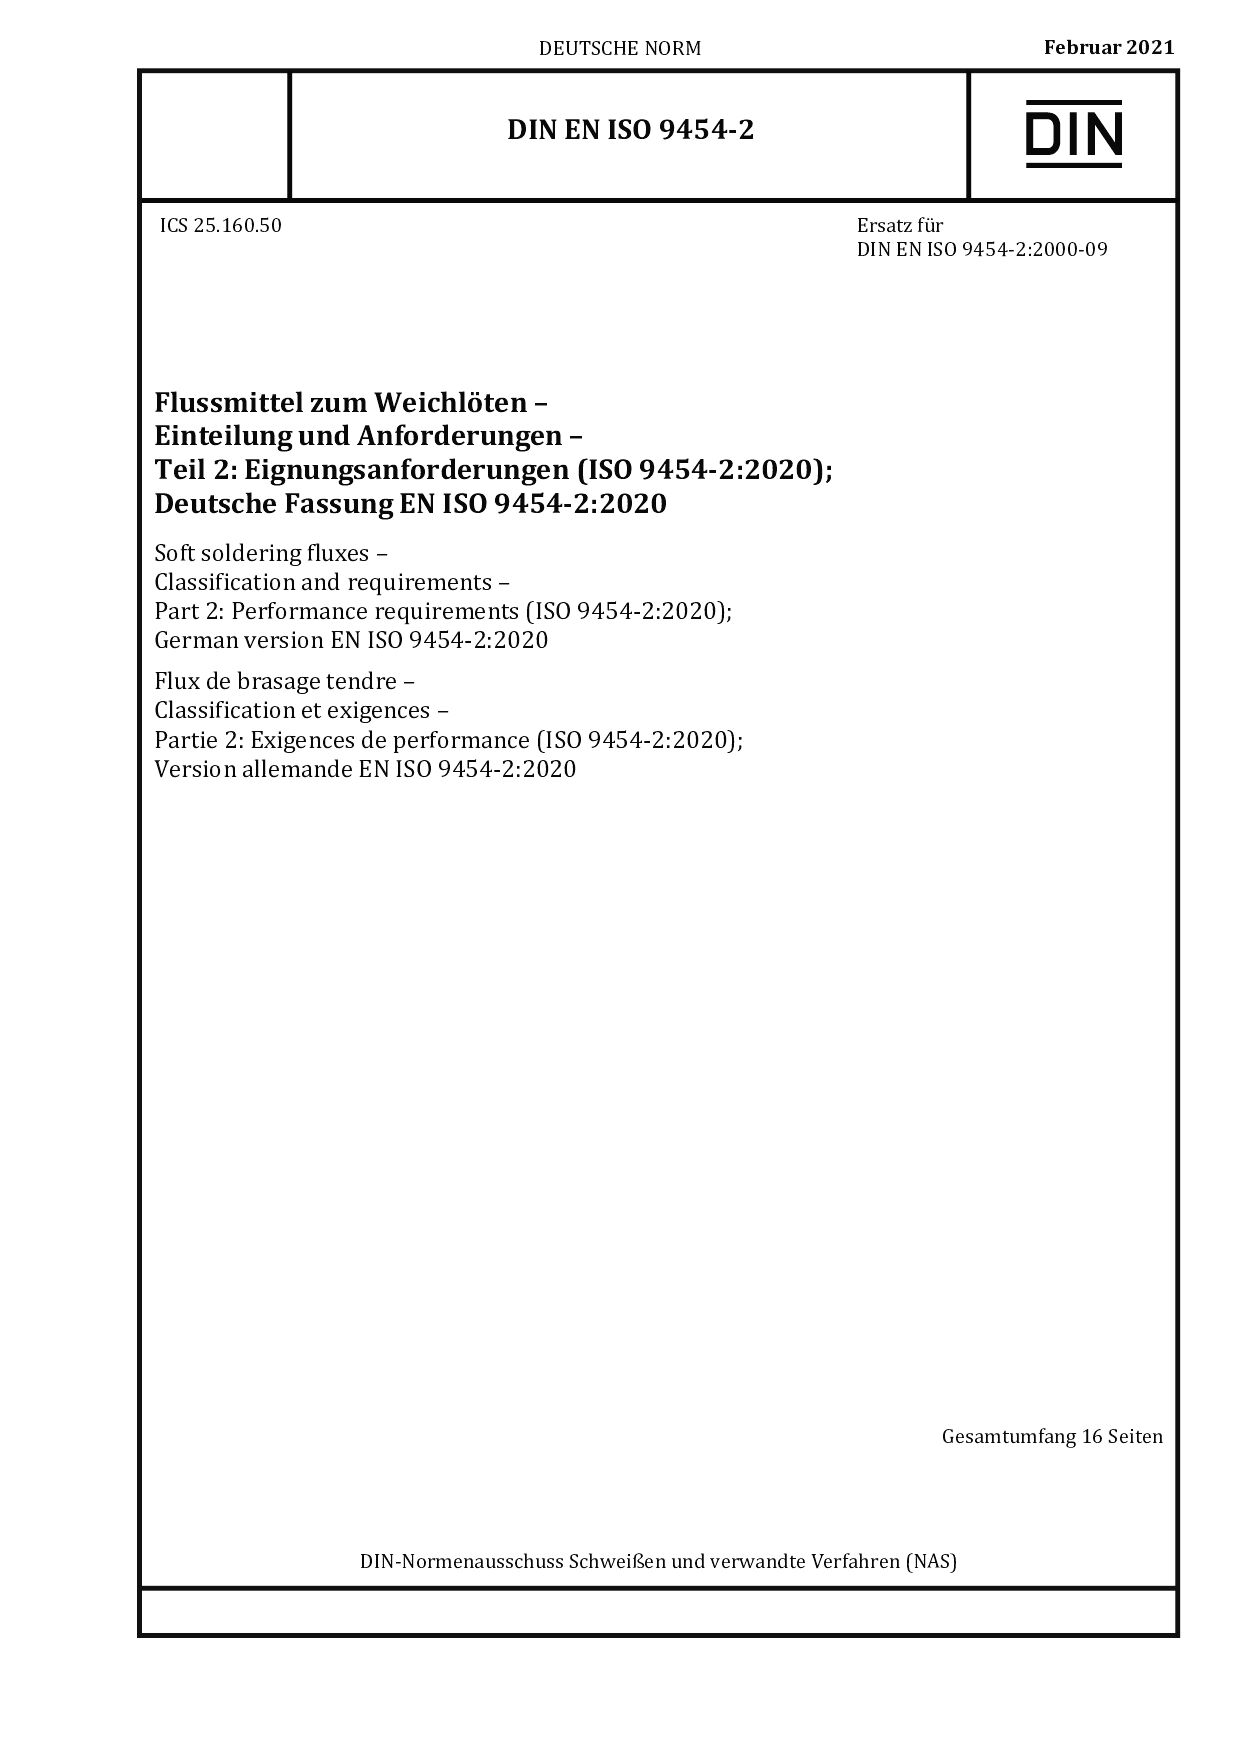 DIN EN ISO 9454-2:2021封面图